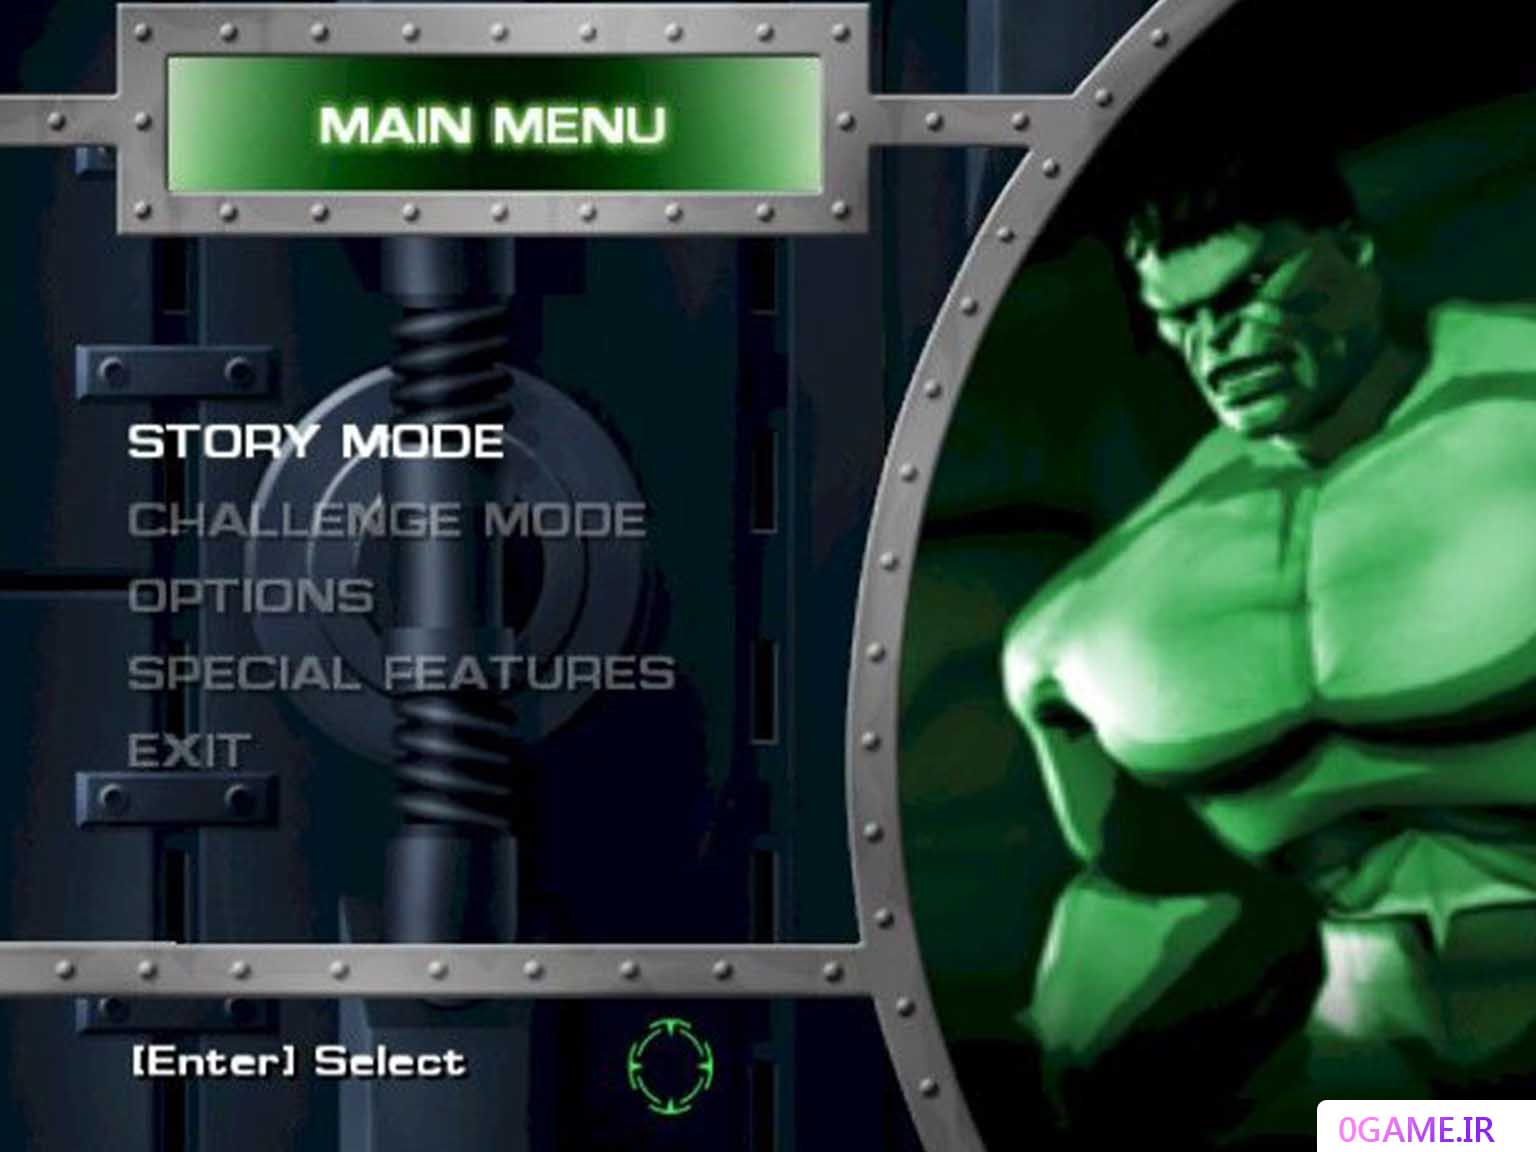 دانلود بازی هالک (Hulk 1) نسخه کامل برای کامپیوتر